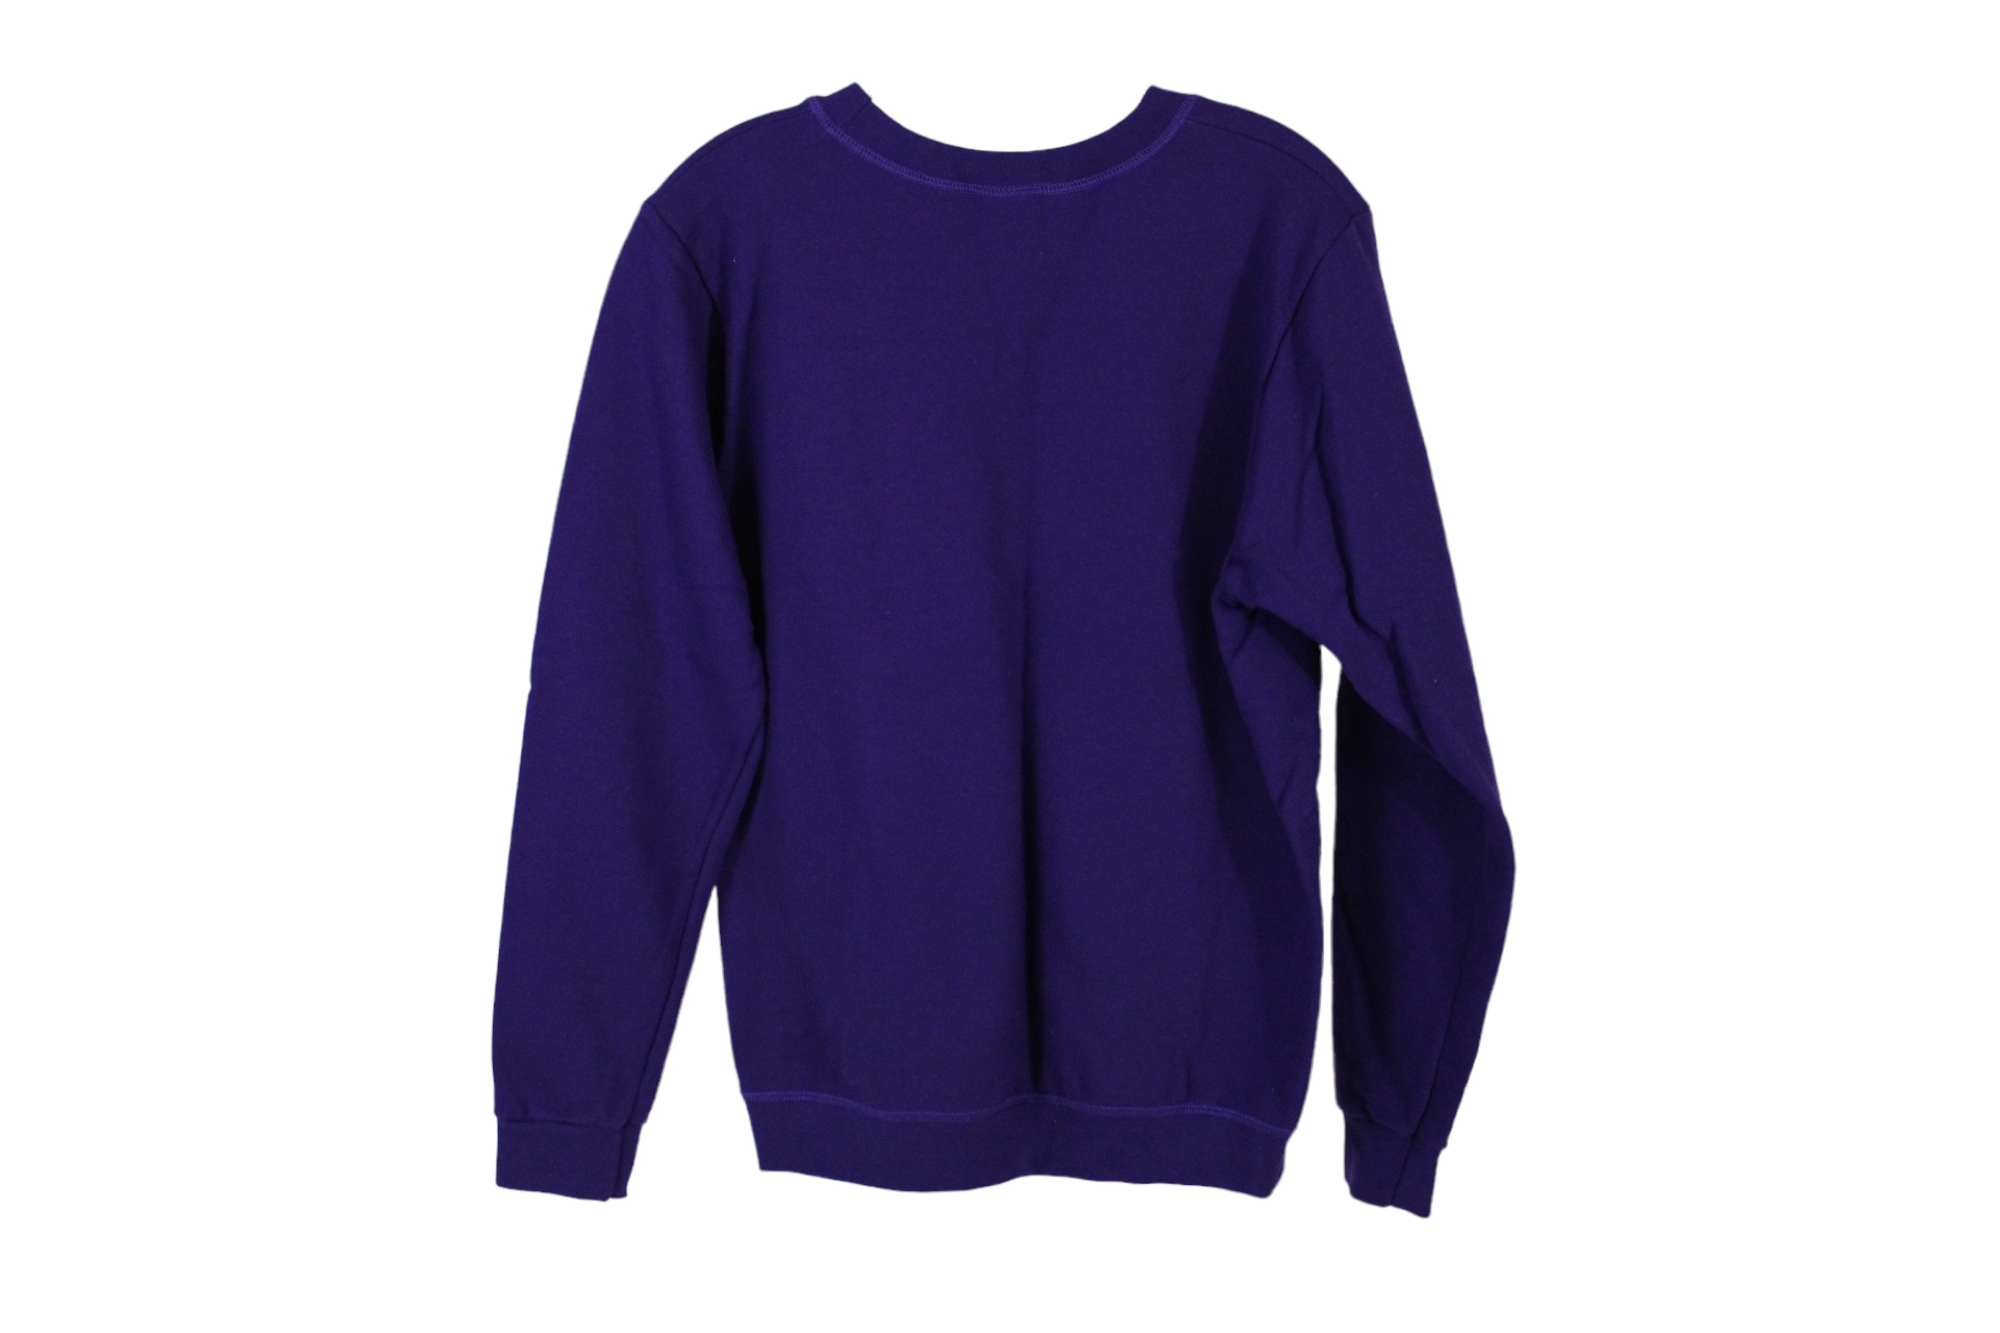 Purple Fleece Lined Sweatshirt | M